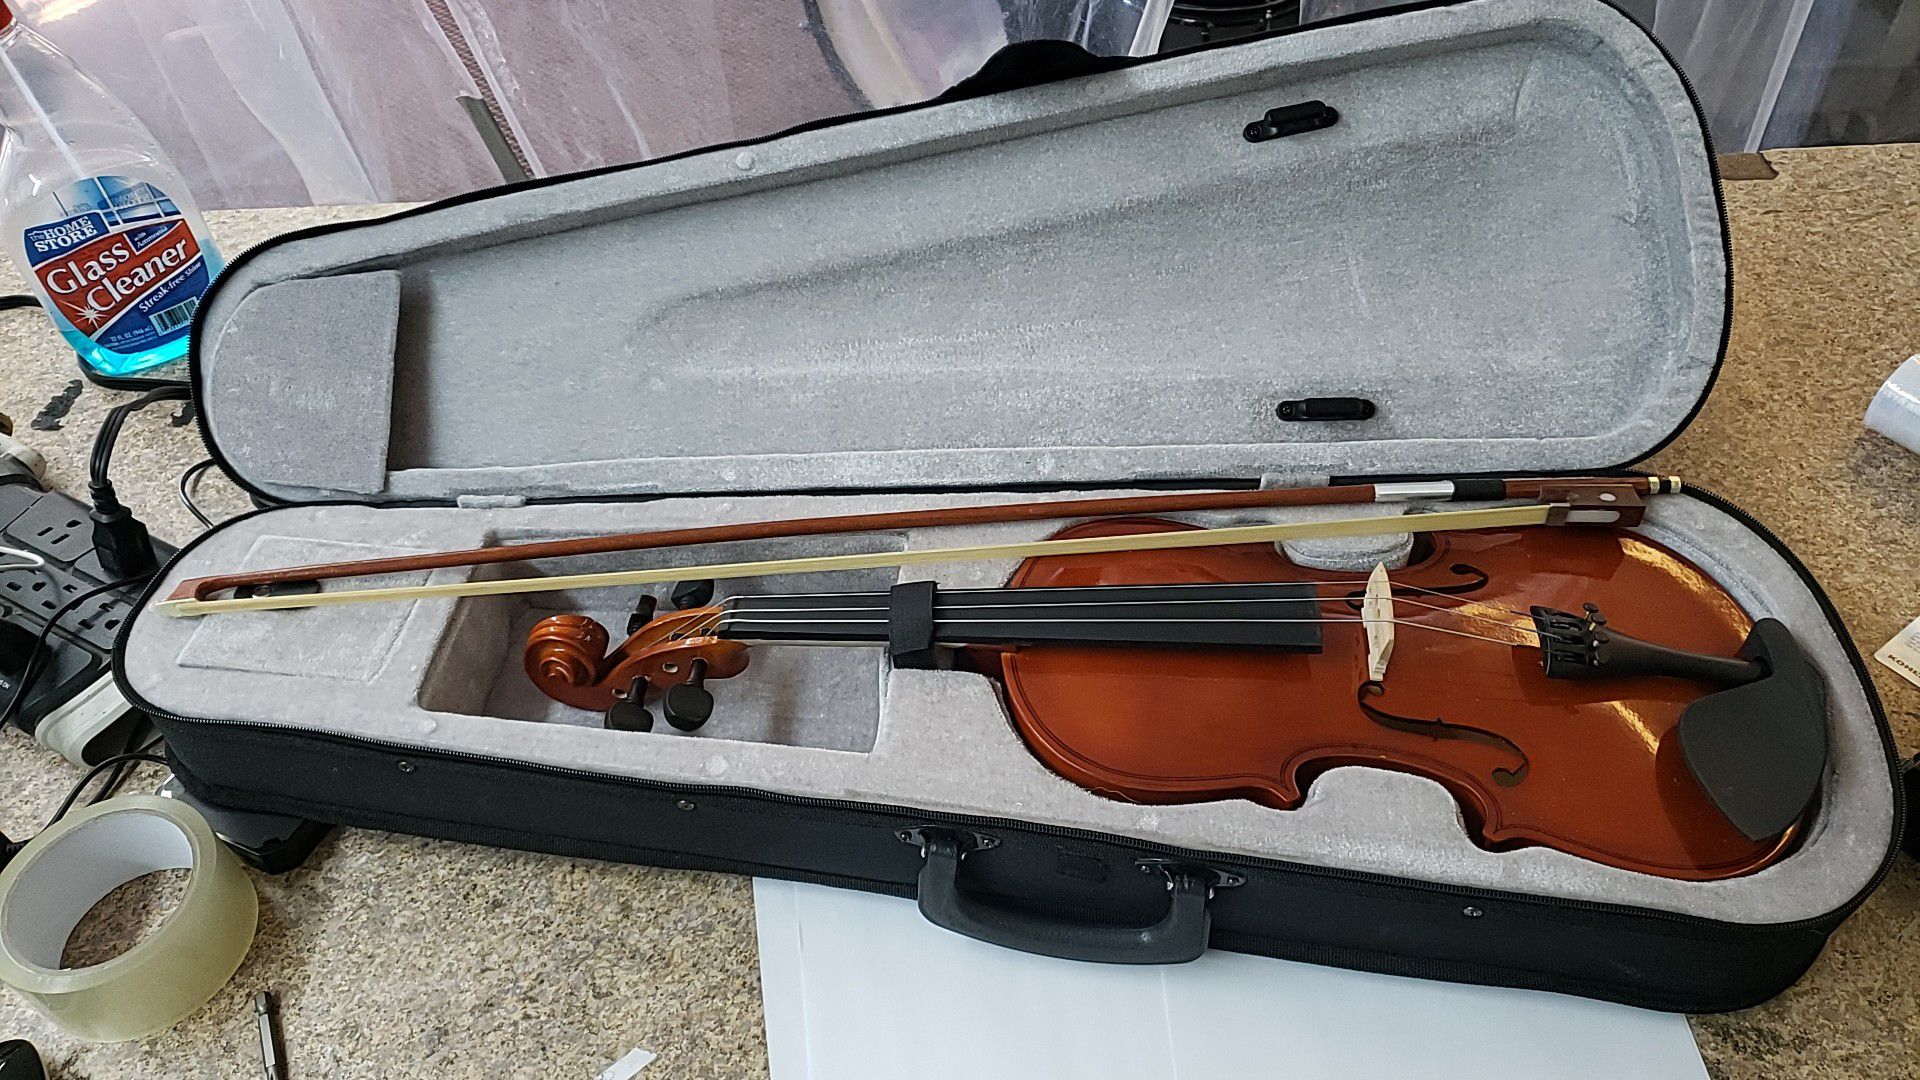 Violin with case